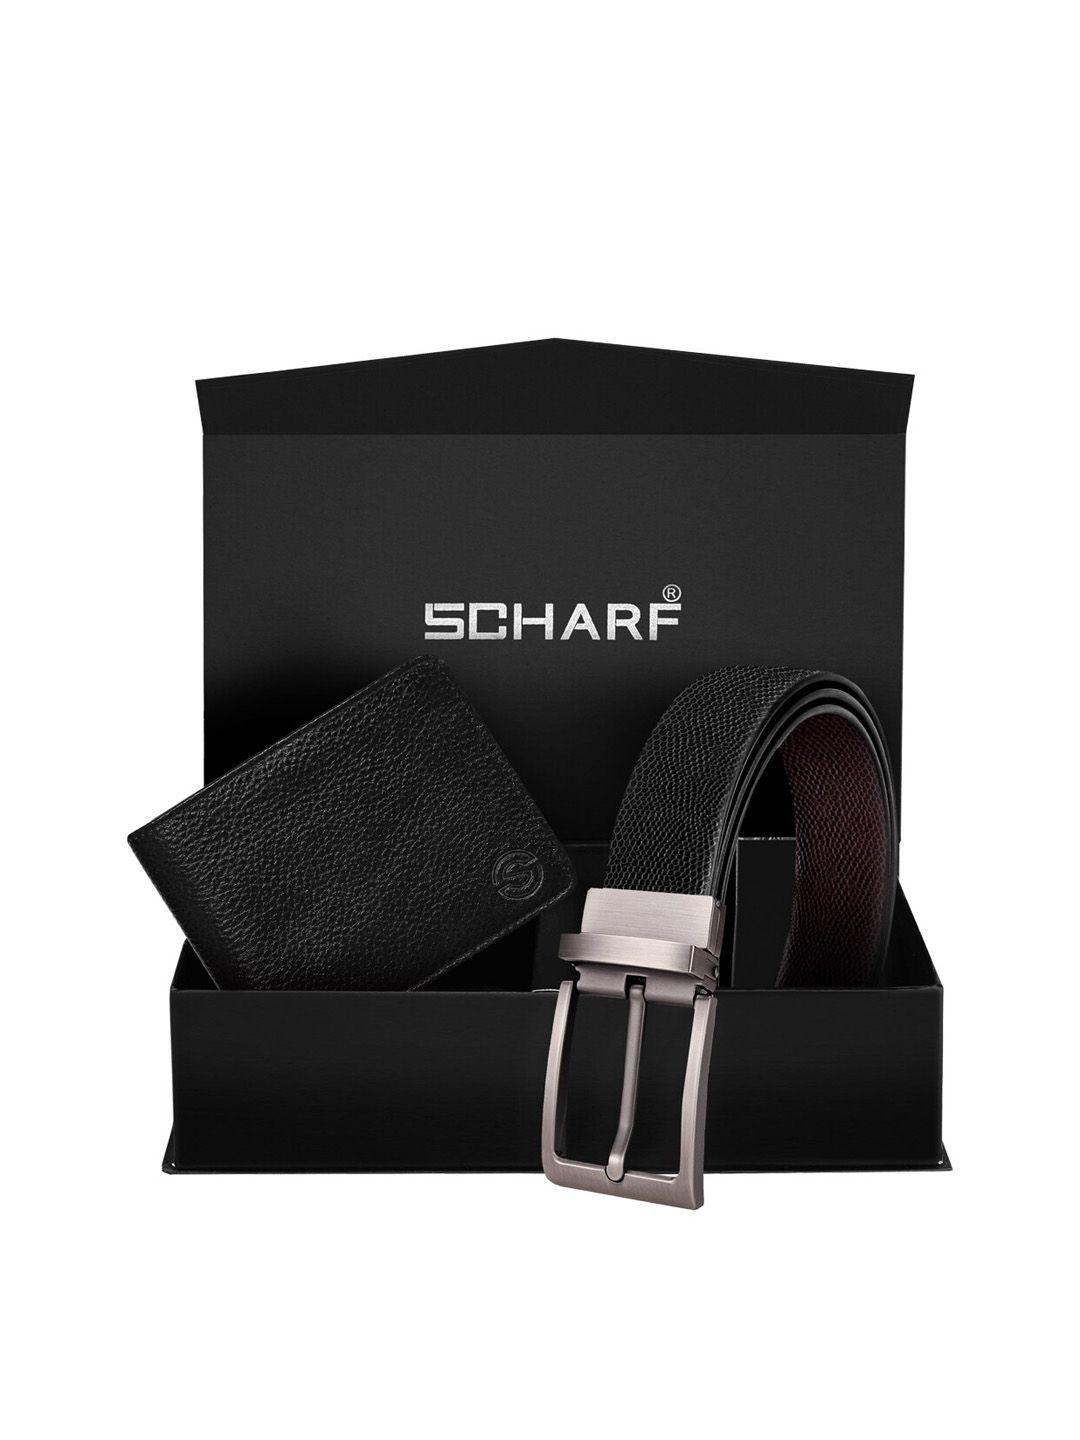 scharf men accessory gift set